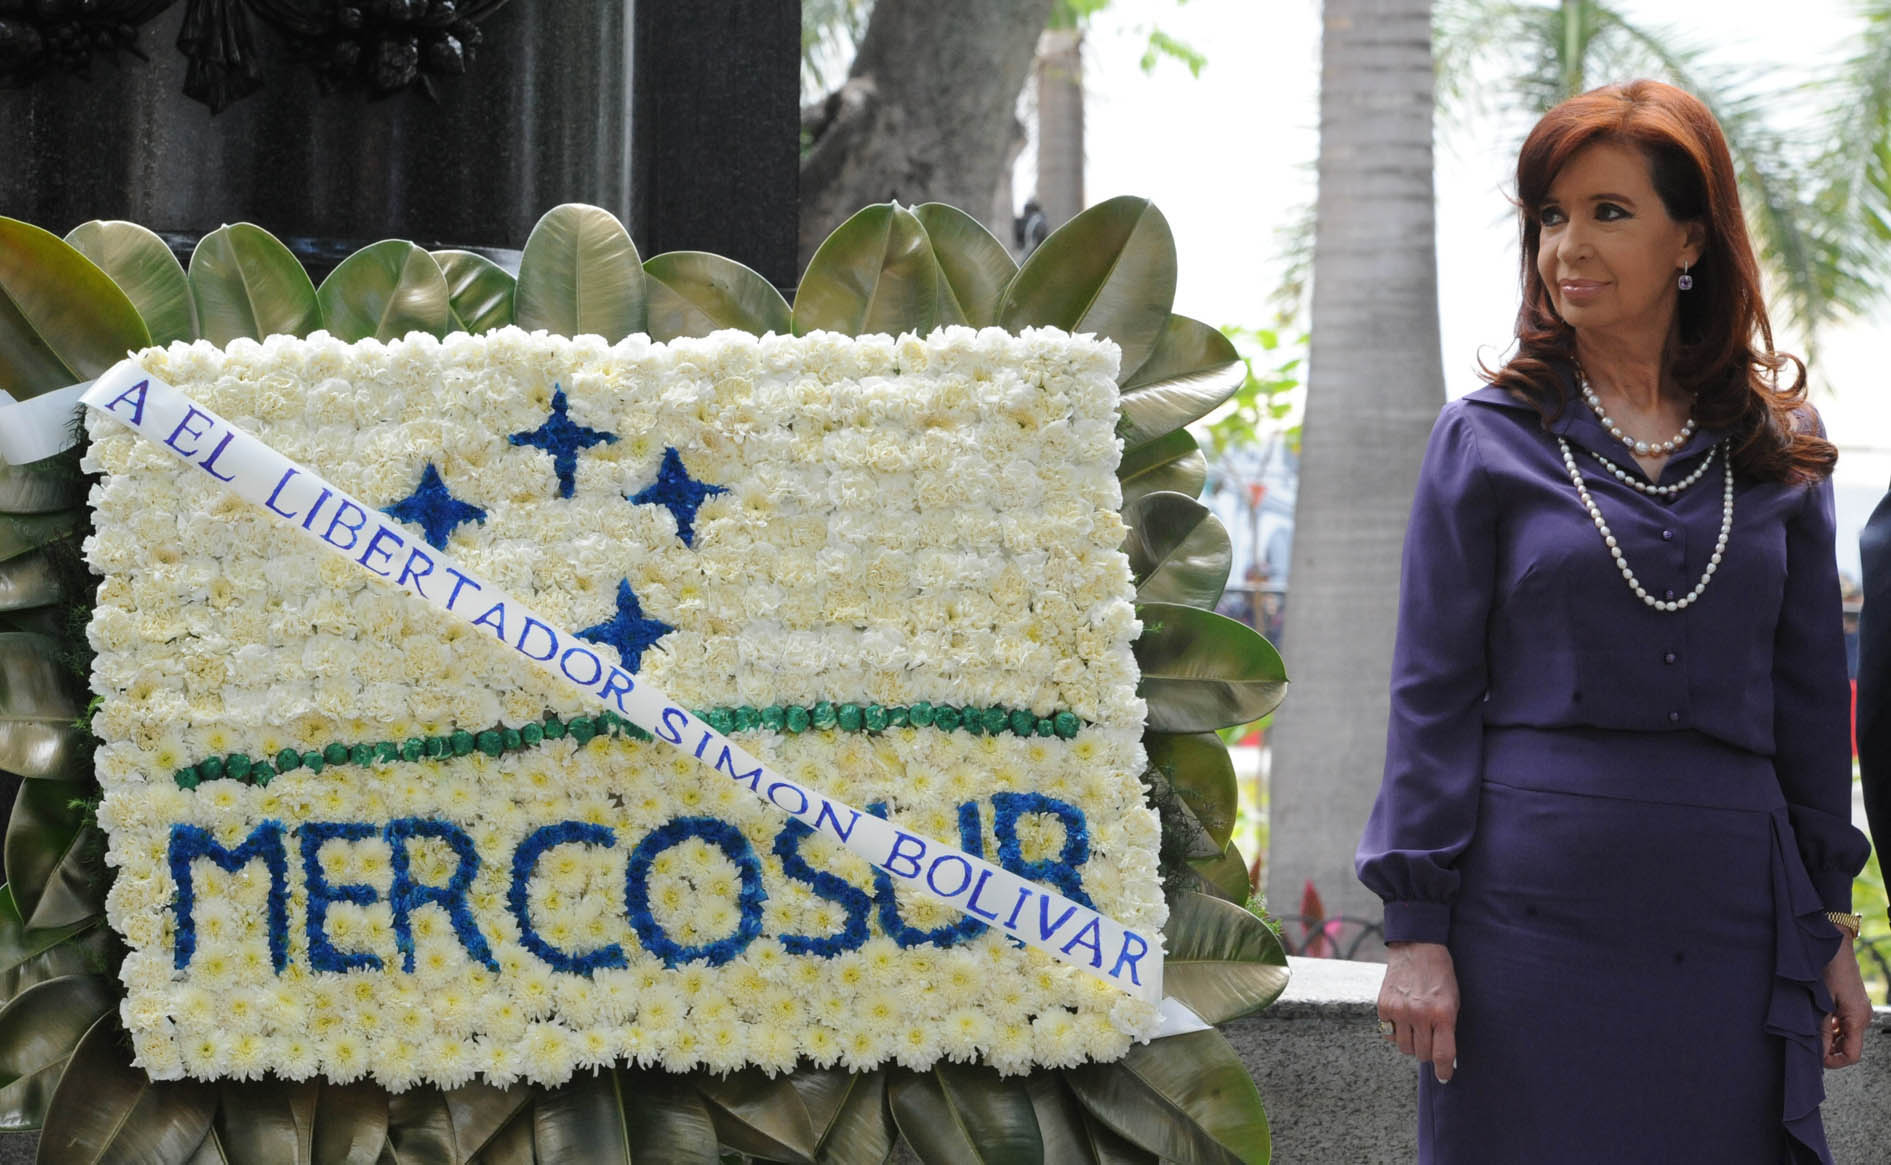 La Presidenta rindió homenaje a Simón Bolívar, junto a sus pares del Mercosur, en Caracas